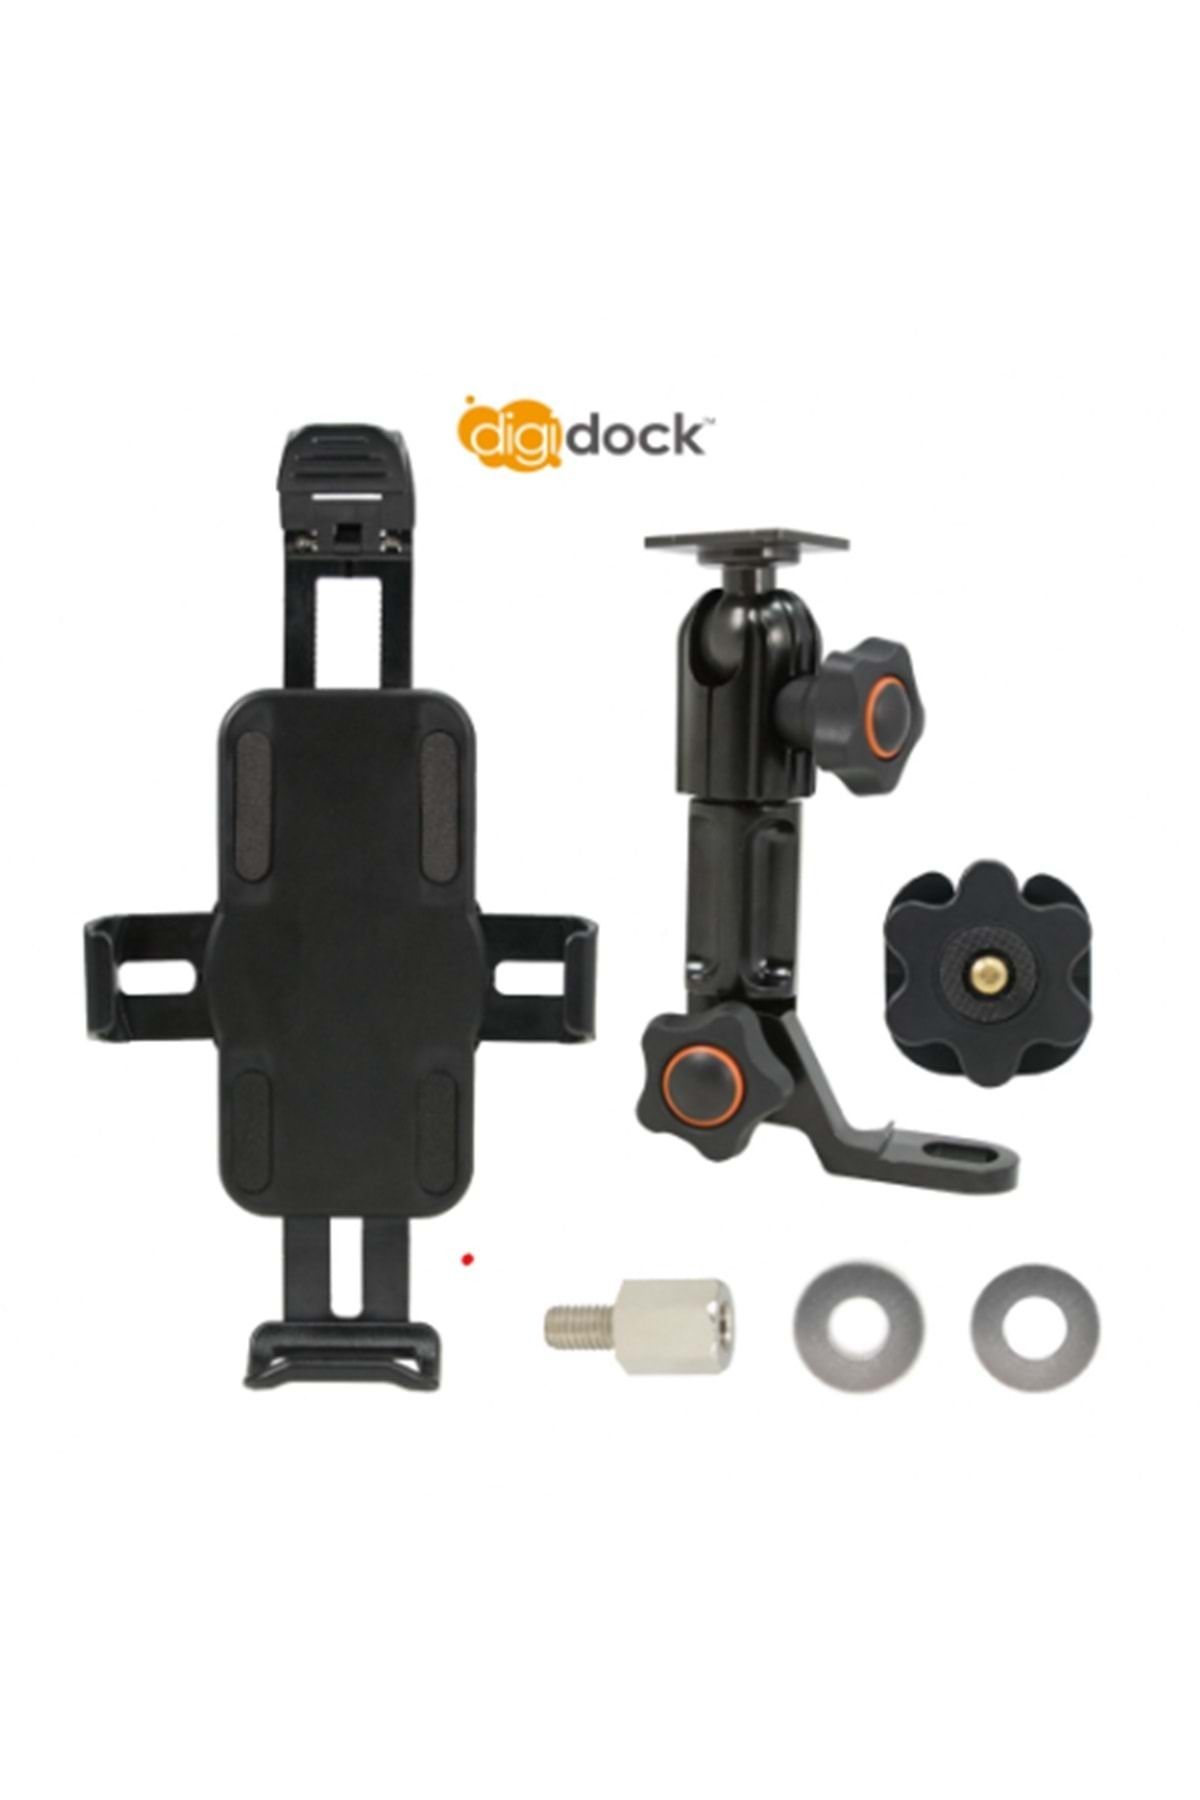 Digidock Cr-1101-m03 Evrensel Telefon Tutucu Ayna Dibi Bağlantı Aparatlı Ve Kamera Montaj Kiti